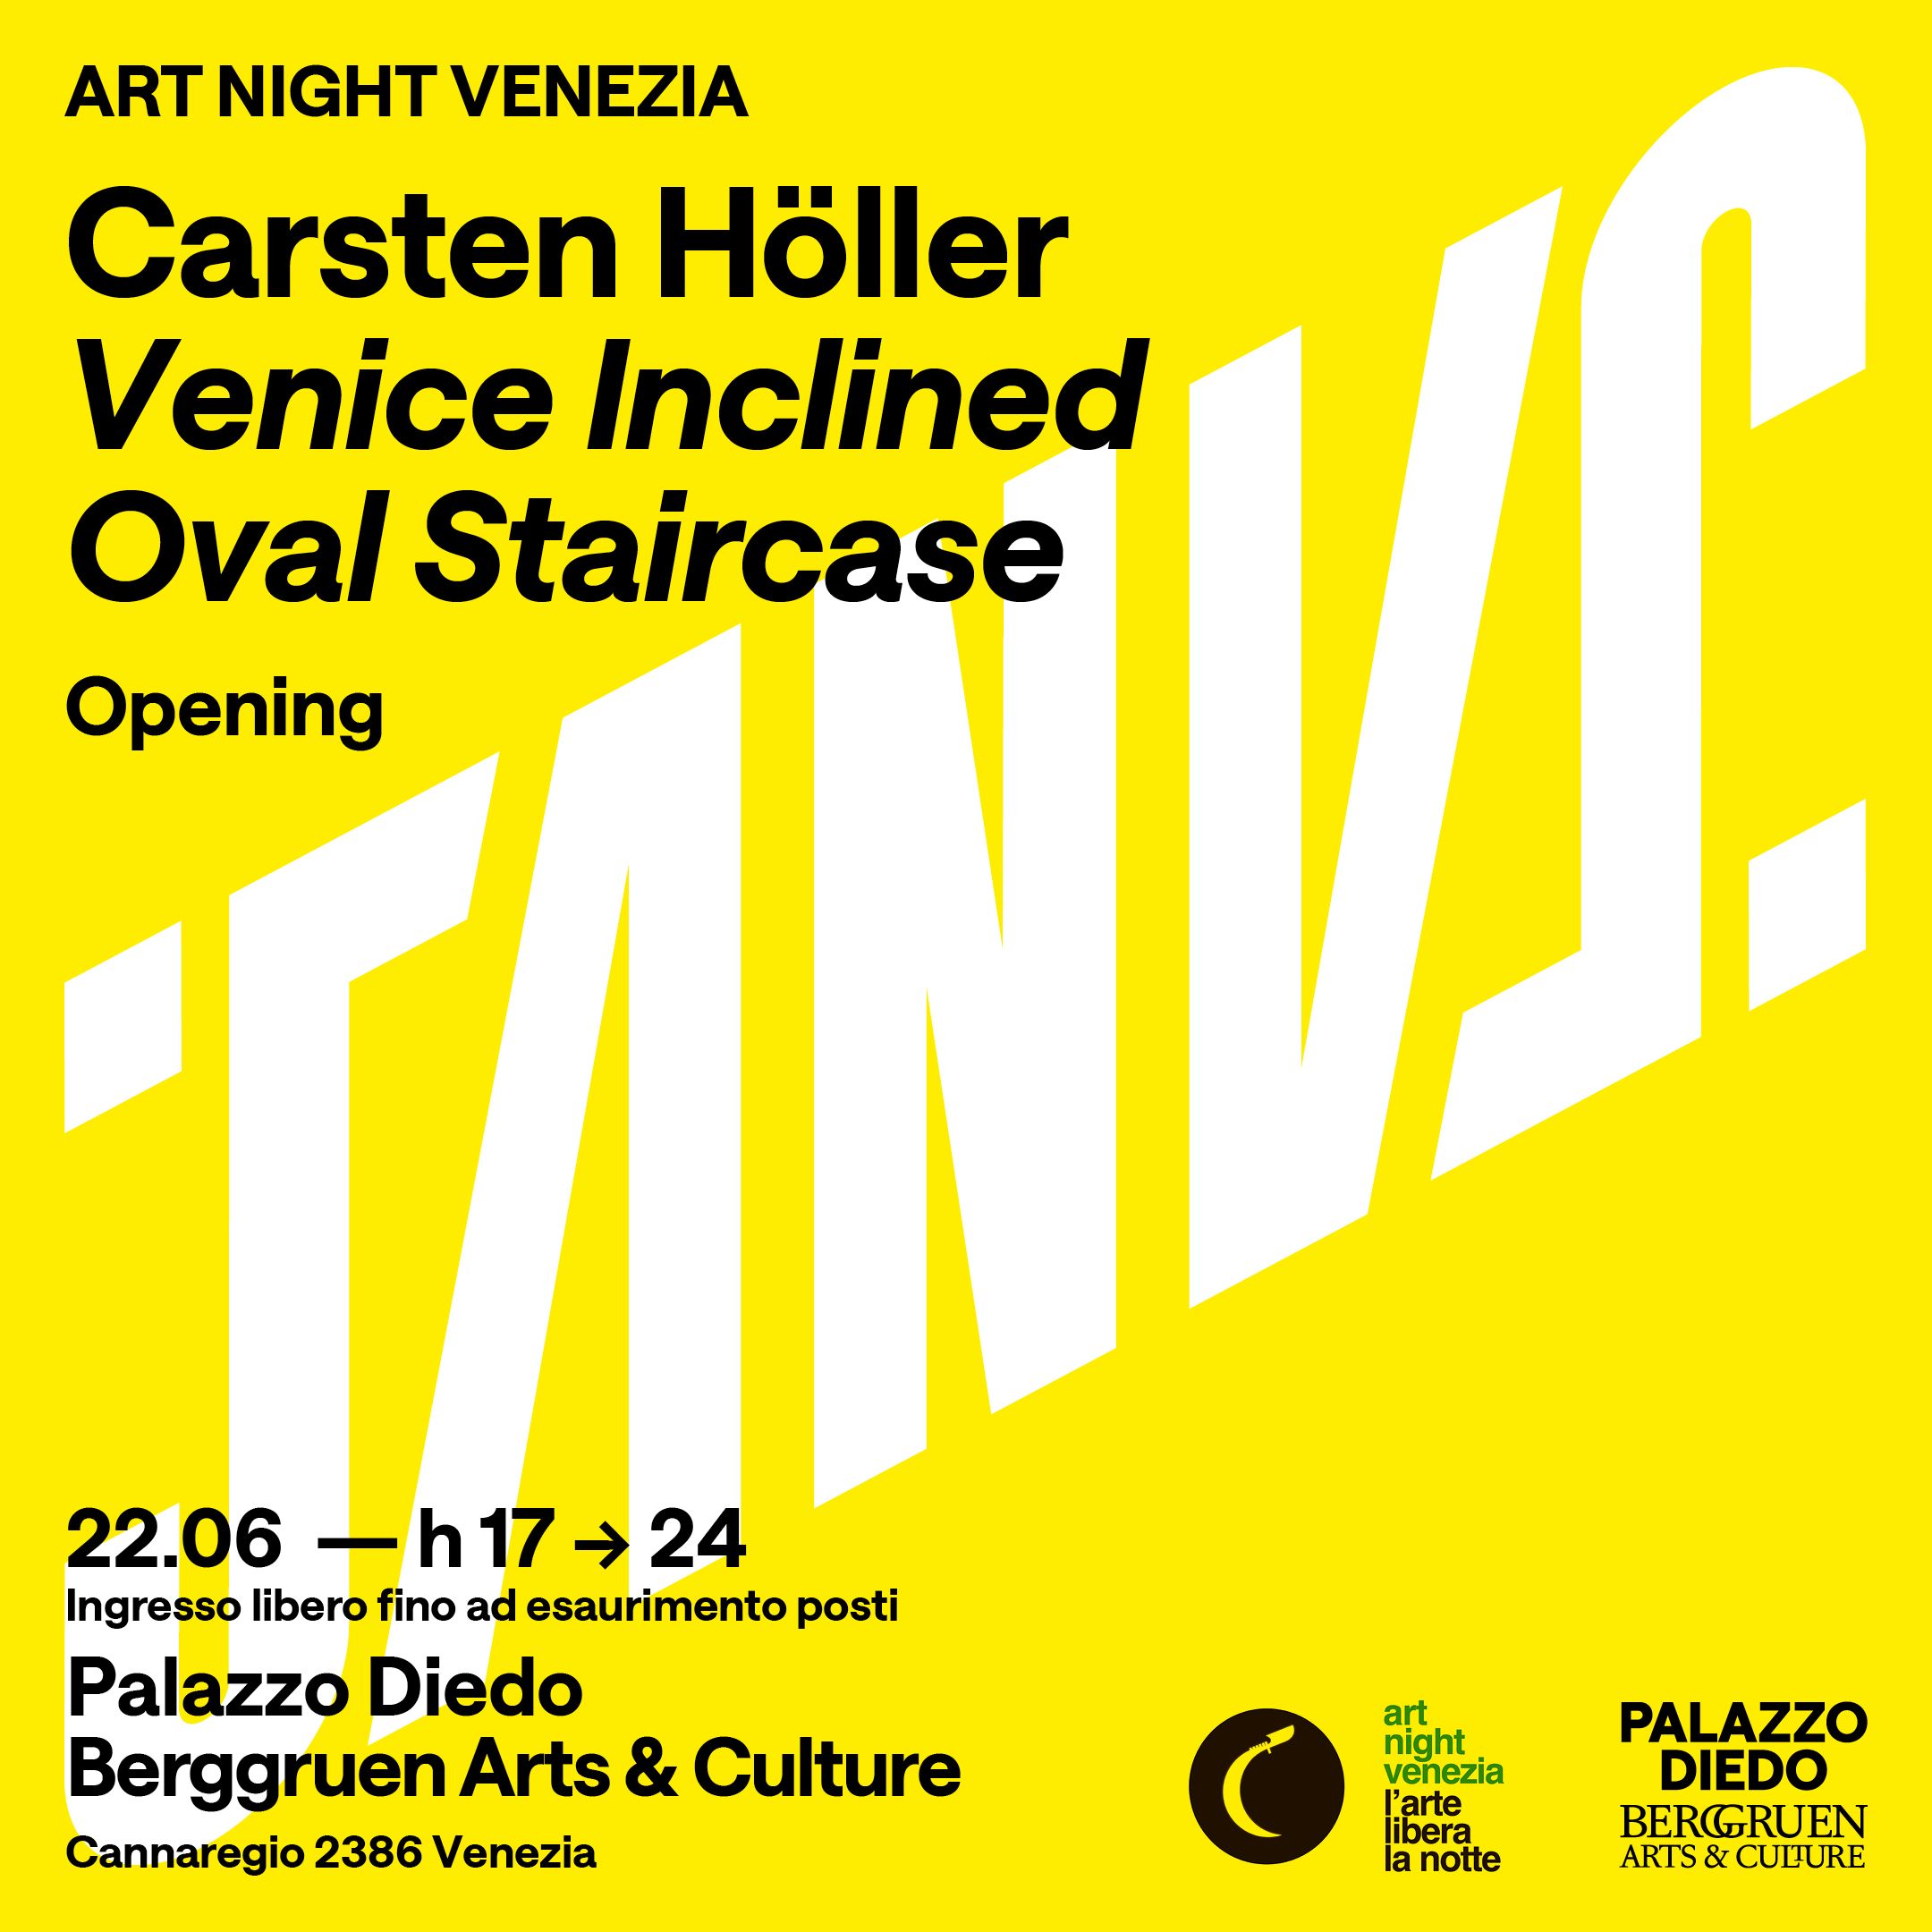 Carsten Holler - opening - Palazzo Diedo Art Night Venezia